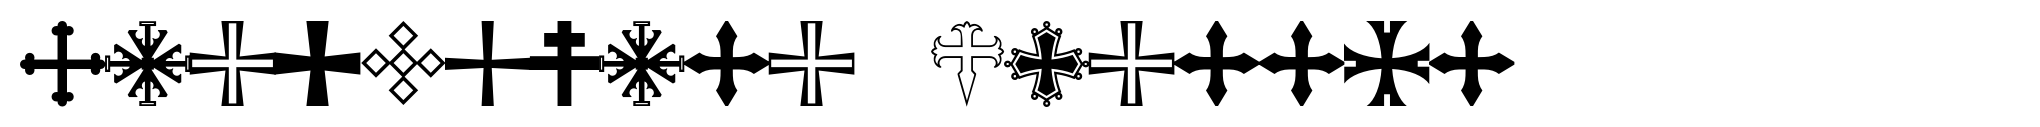 Apocalypso Crosses image